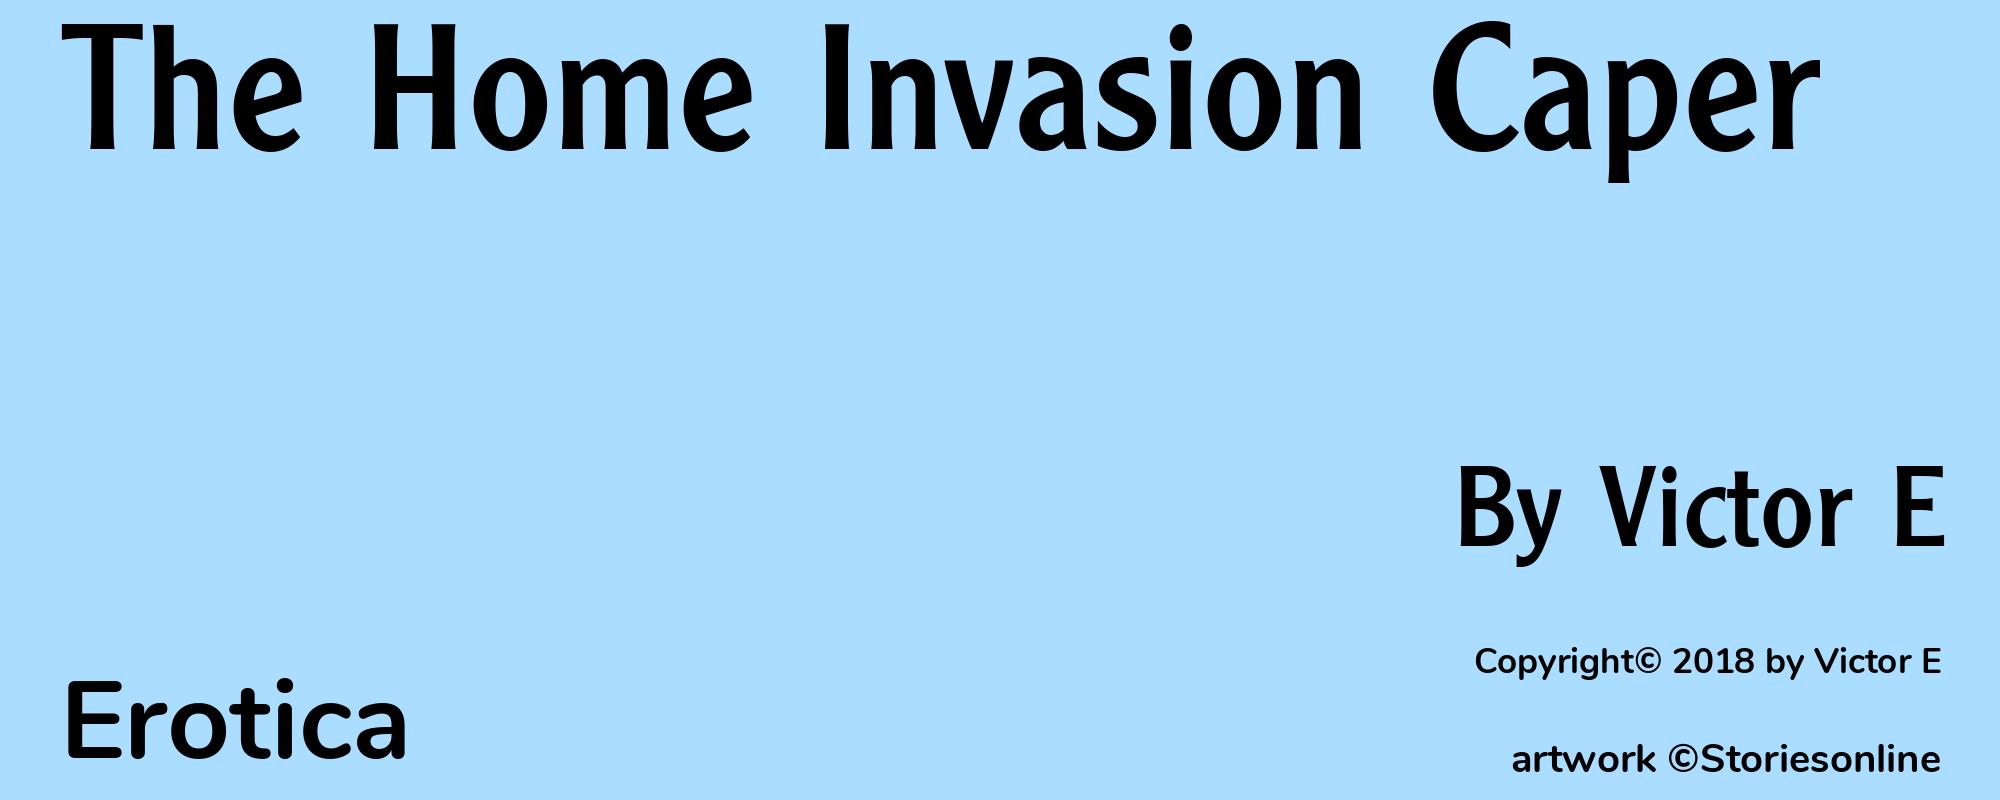 The Home Invasion Caper - Cover